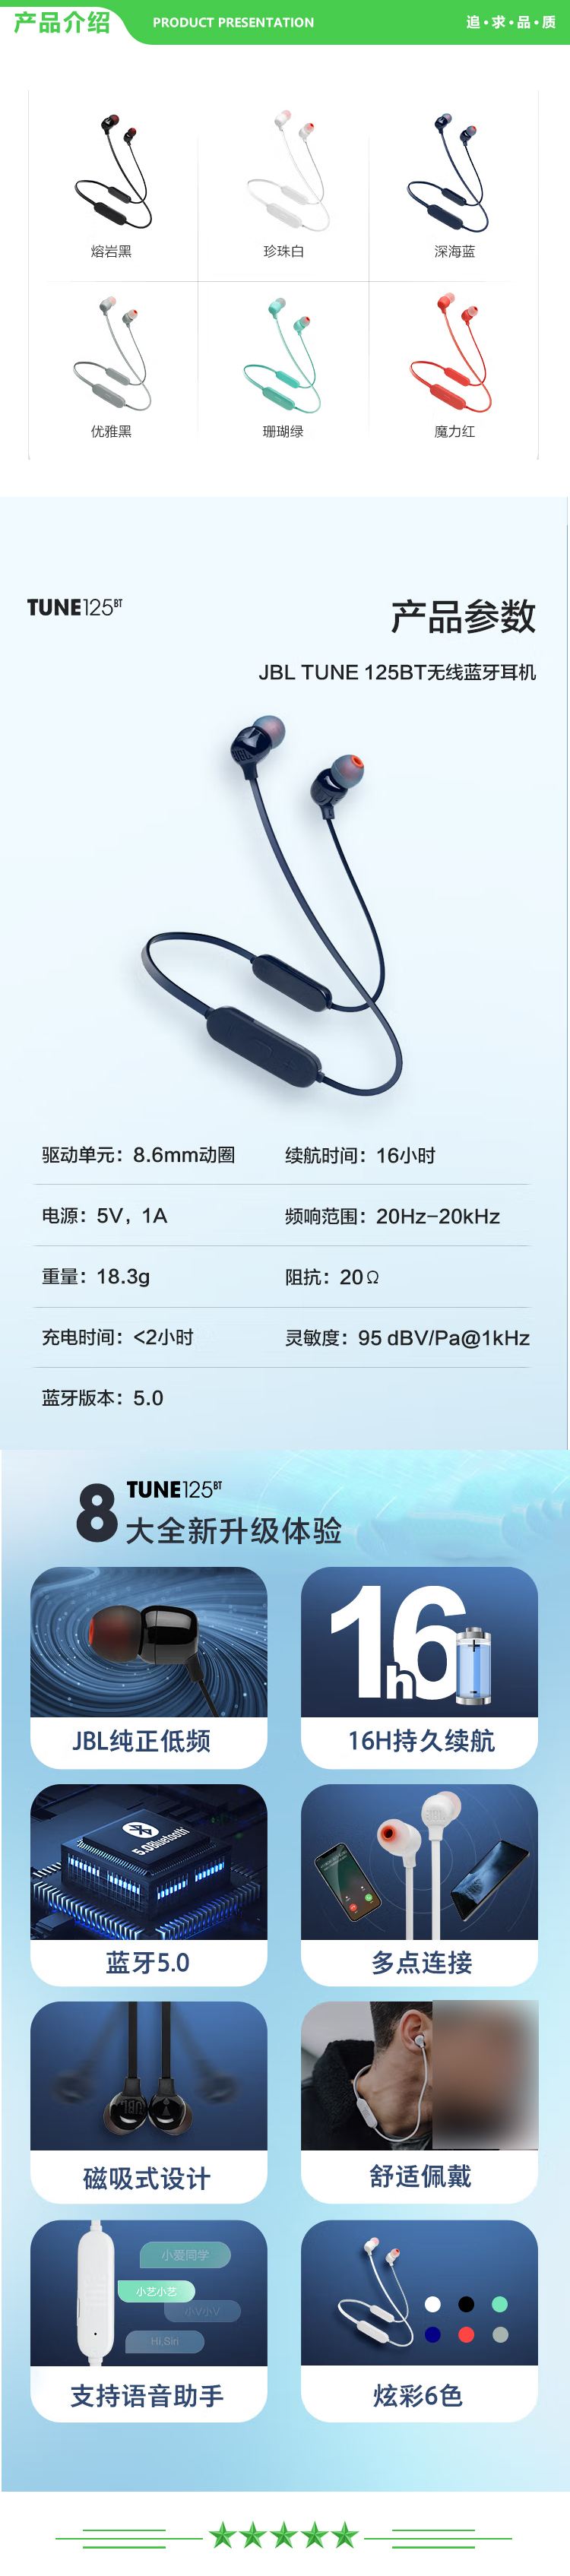 JBL TUNE125BT 颈挂式无线蓝牙耳机 半入耳式通话跑步运动耳机 带麦线控音乐耳机 苹果安卓手机通用 珊瑚绿 .jpg